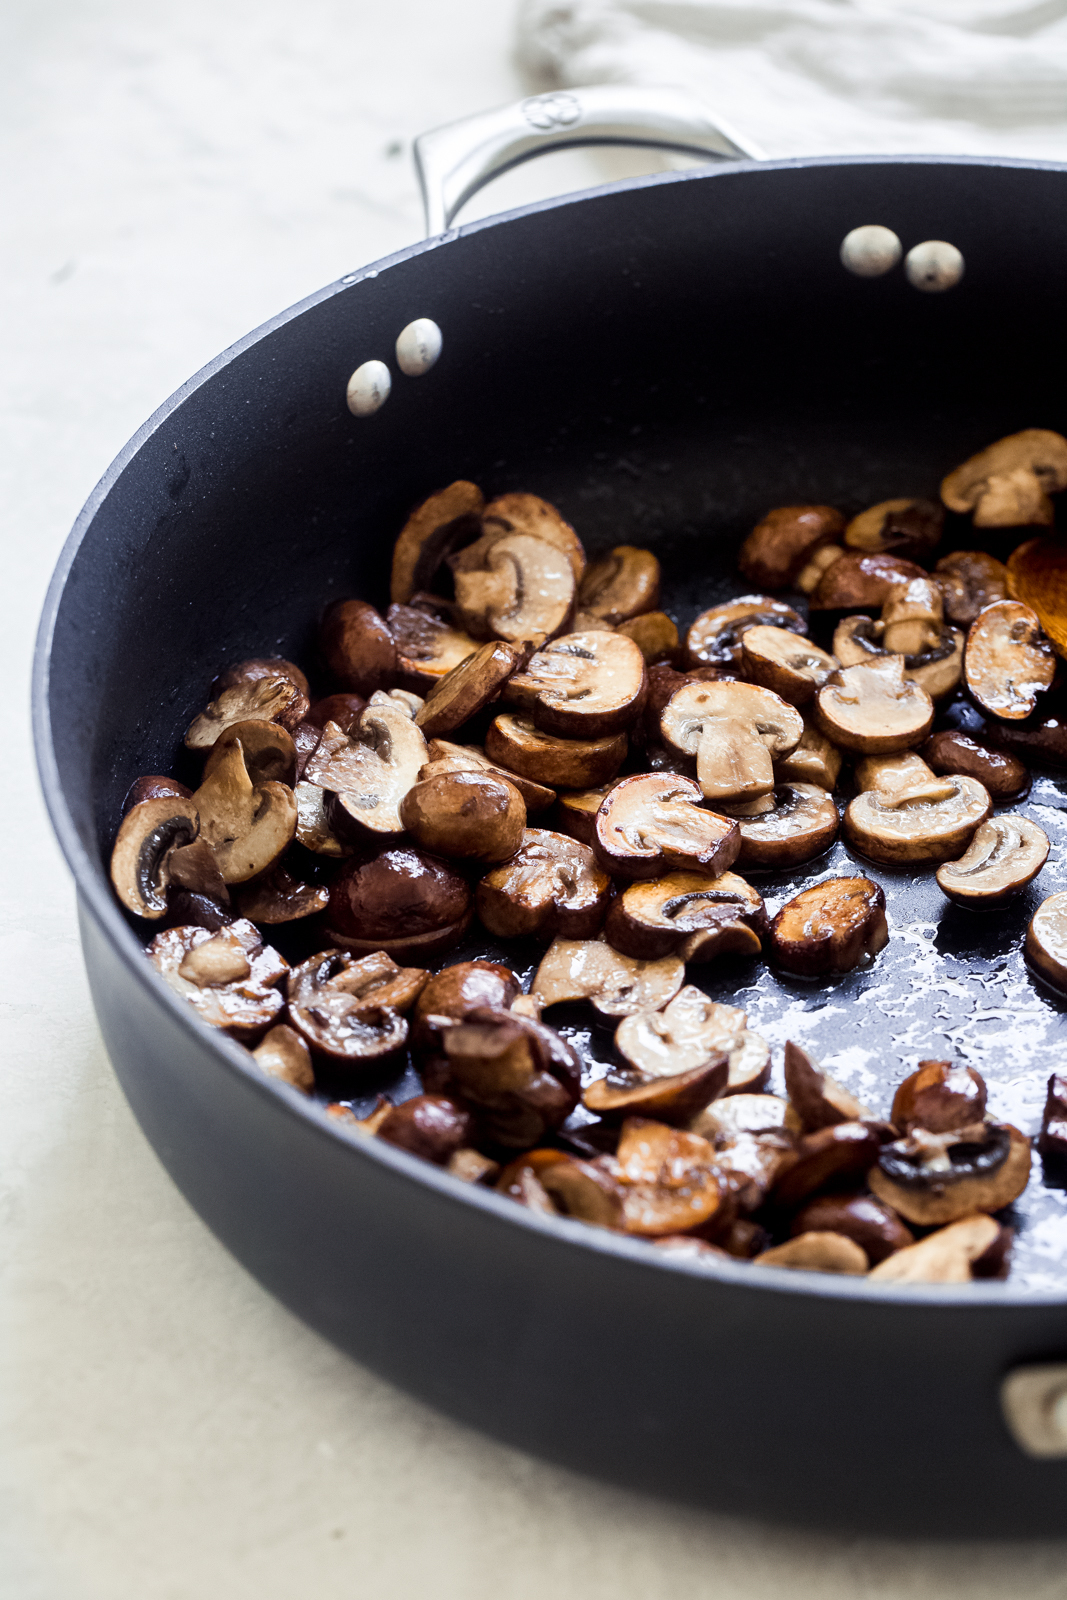 sautéed mushroom sin a black sauce pan